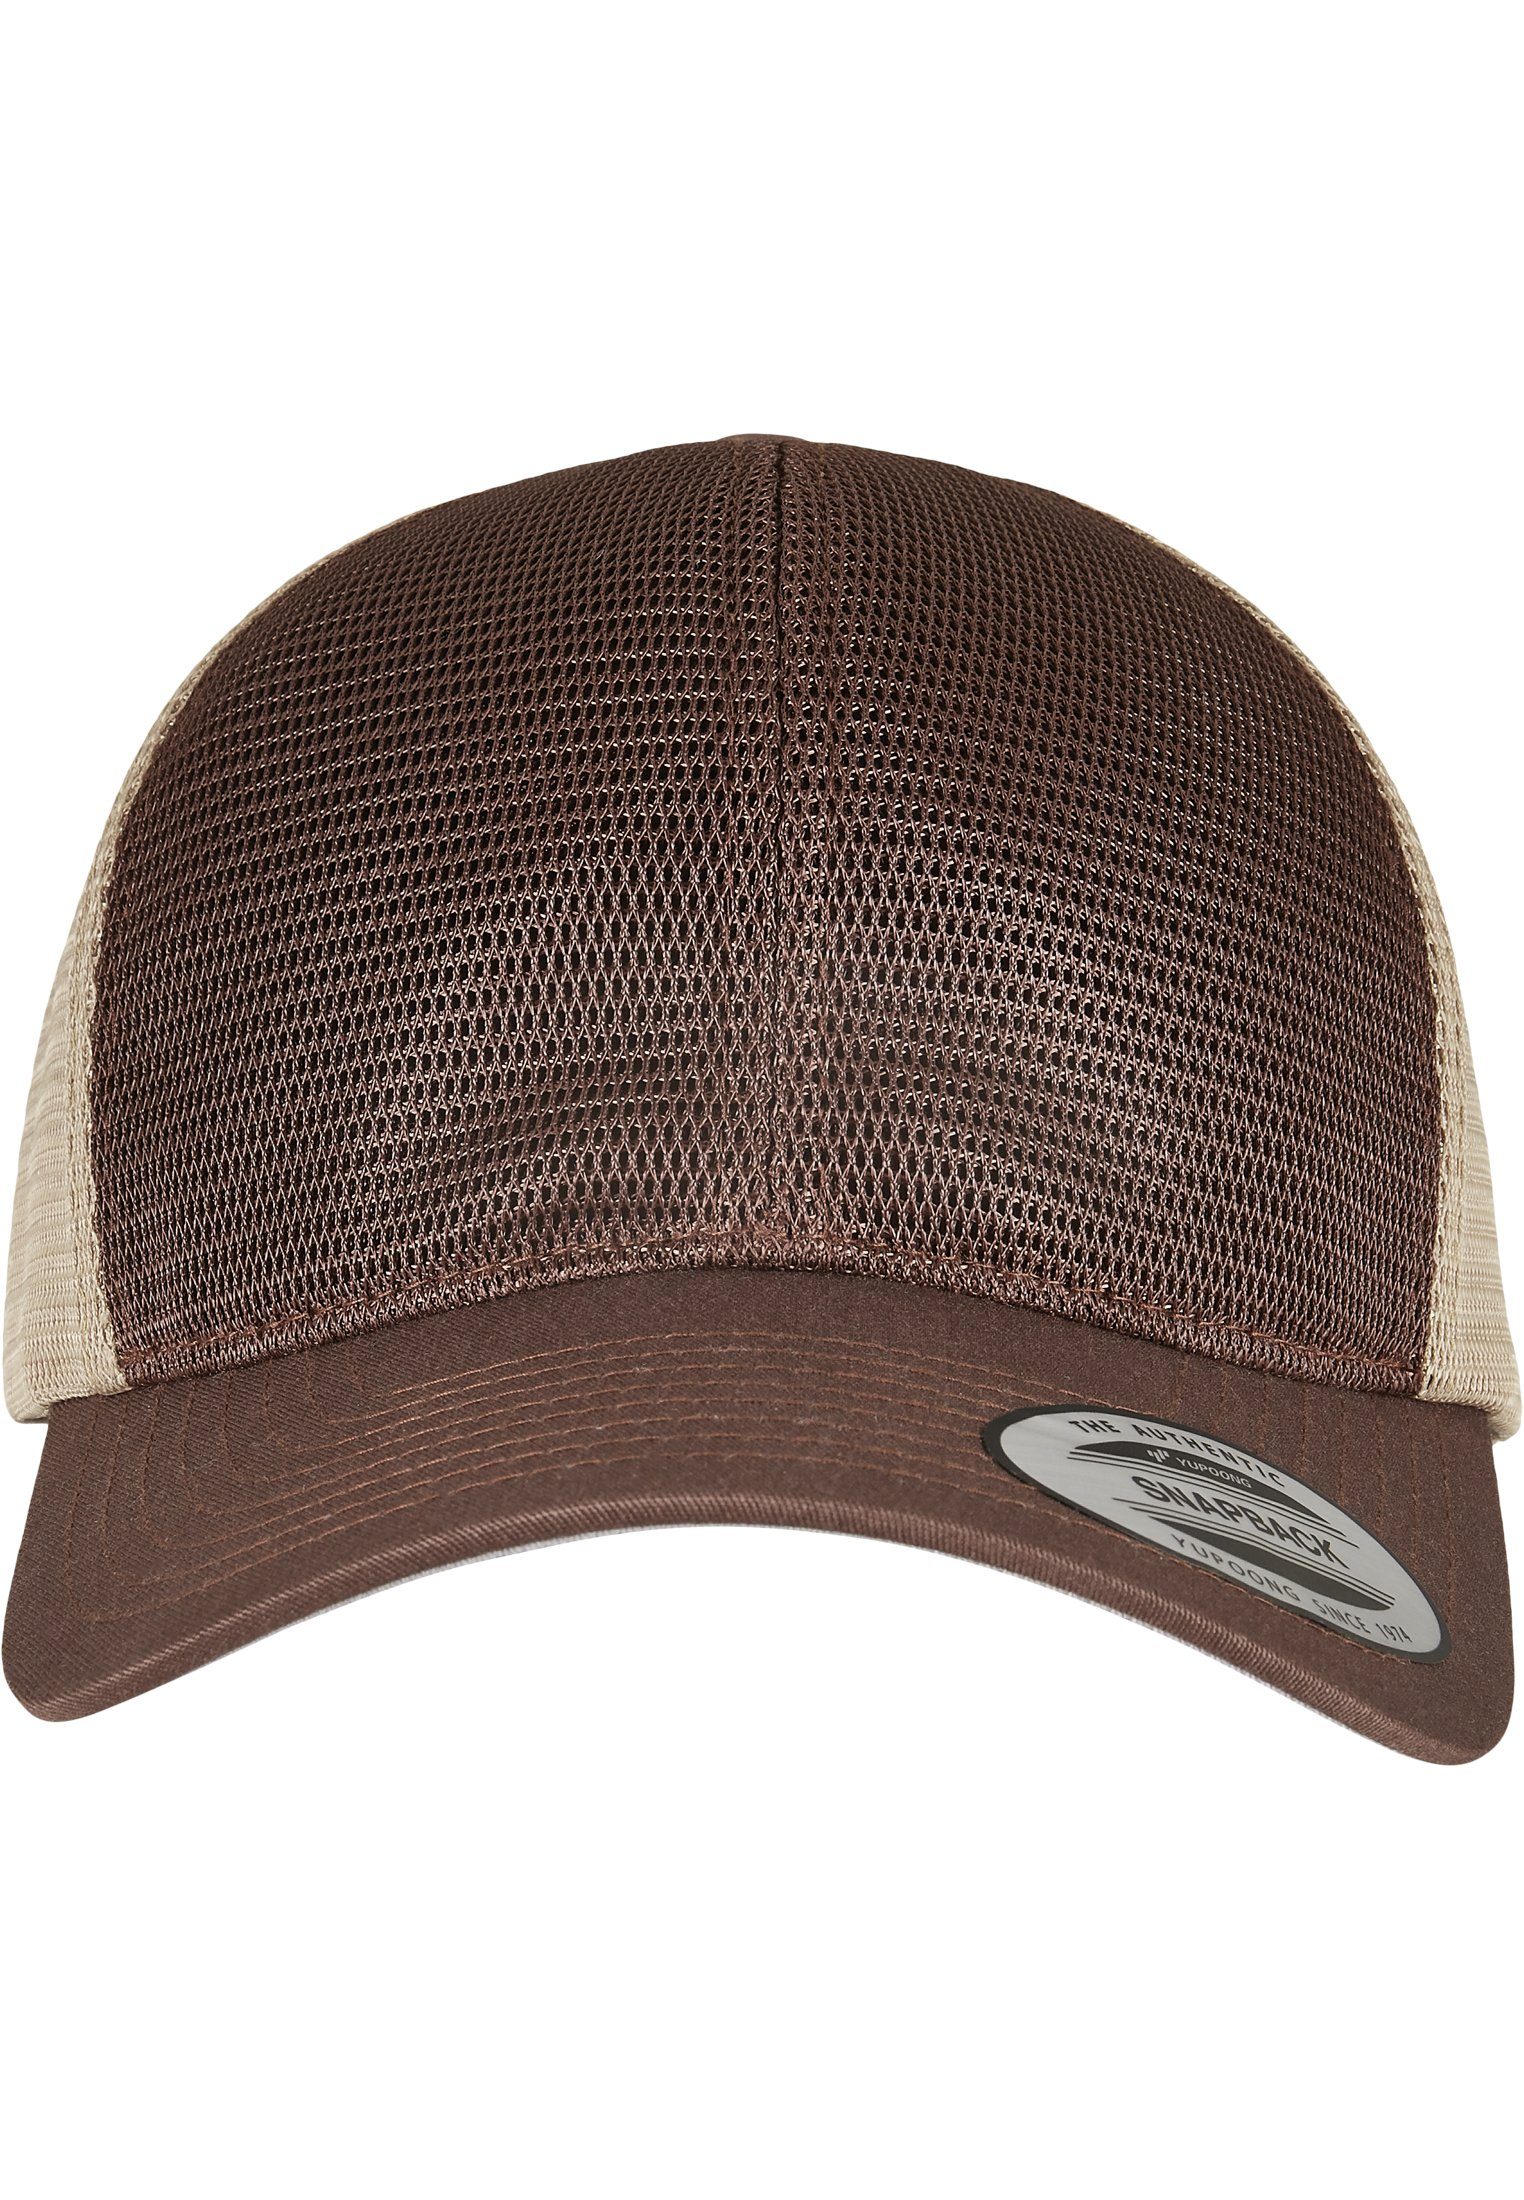 brown/khaki 2-Tone Omnimesh Flexfit Flex Cap Accessoires Cap 360°